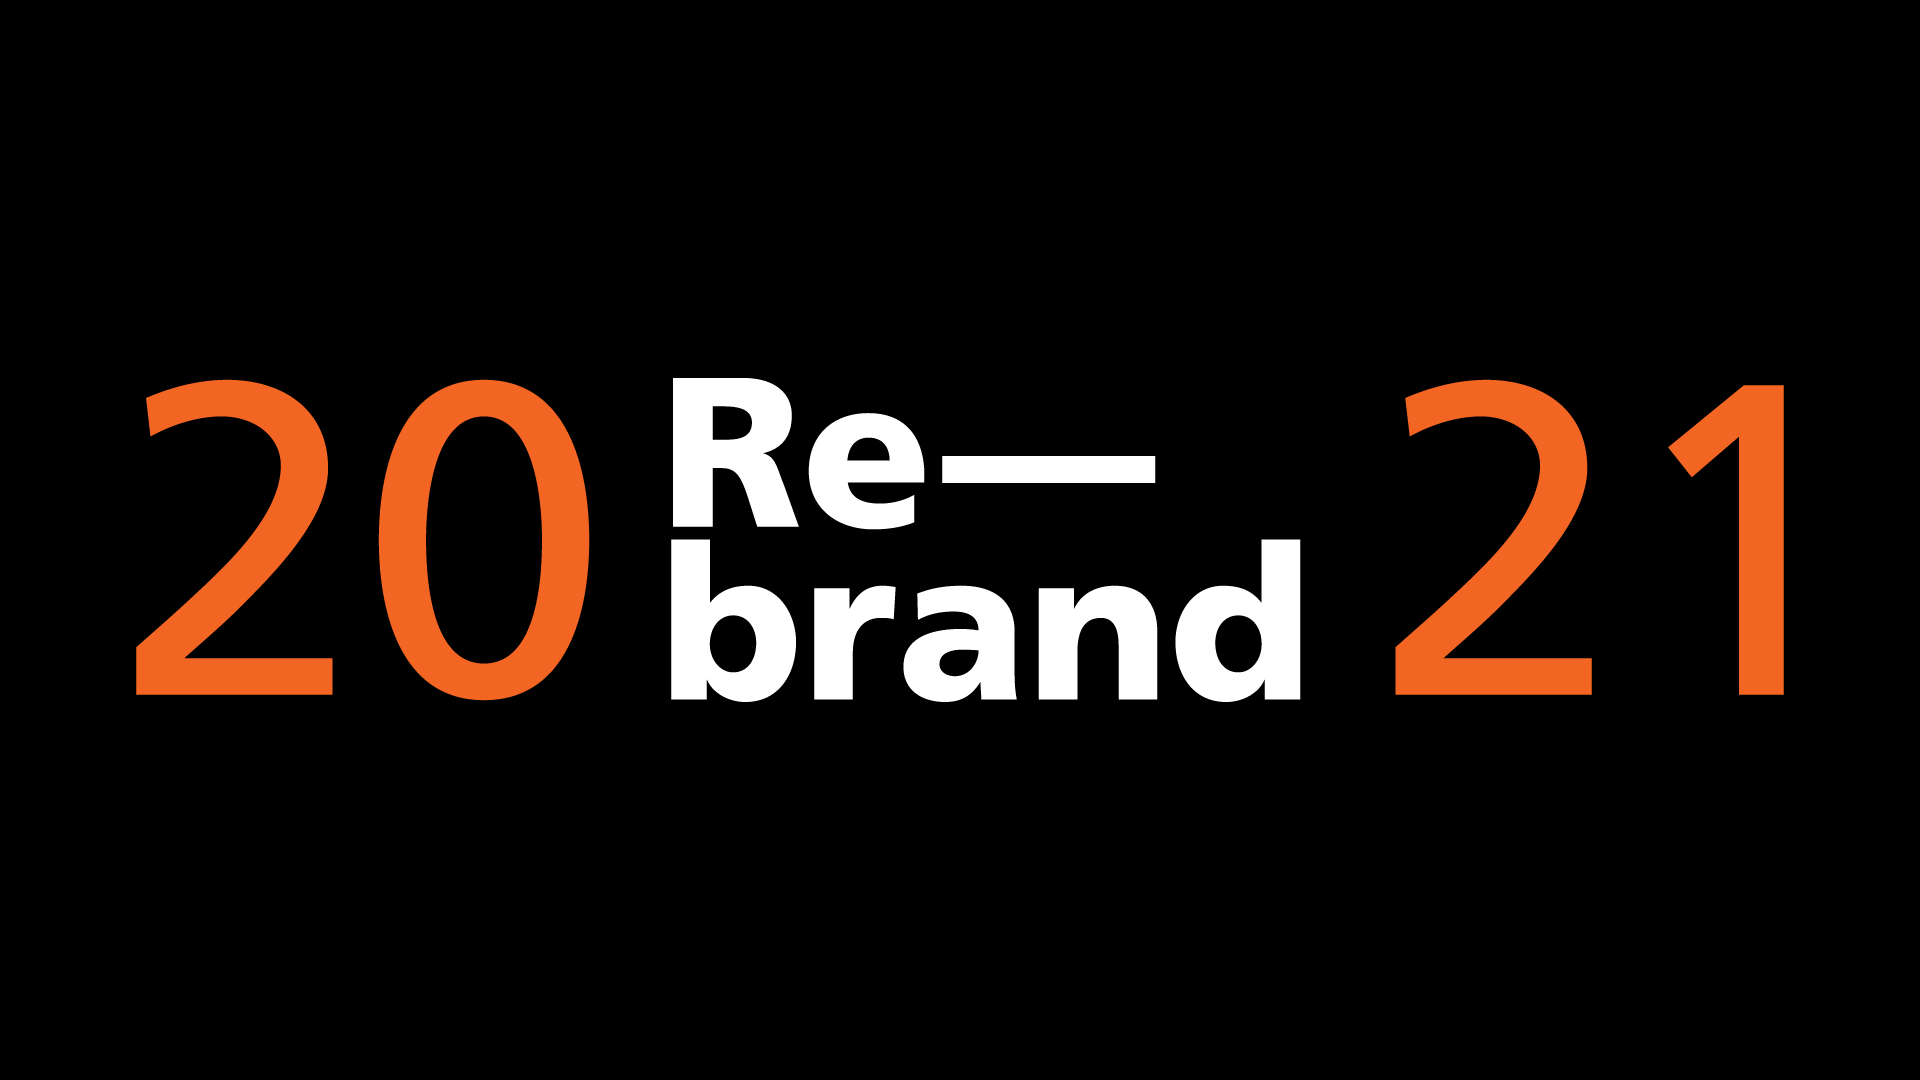 I migliori e peggiori rebrand del 2021